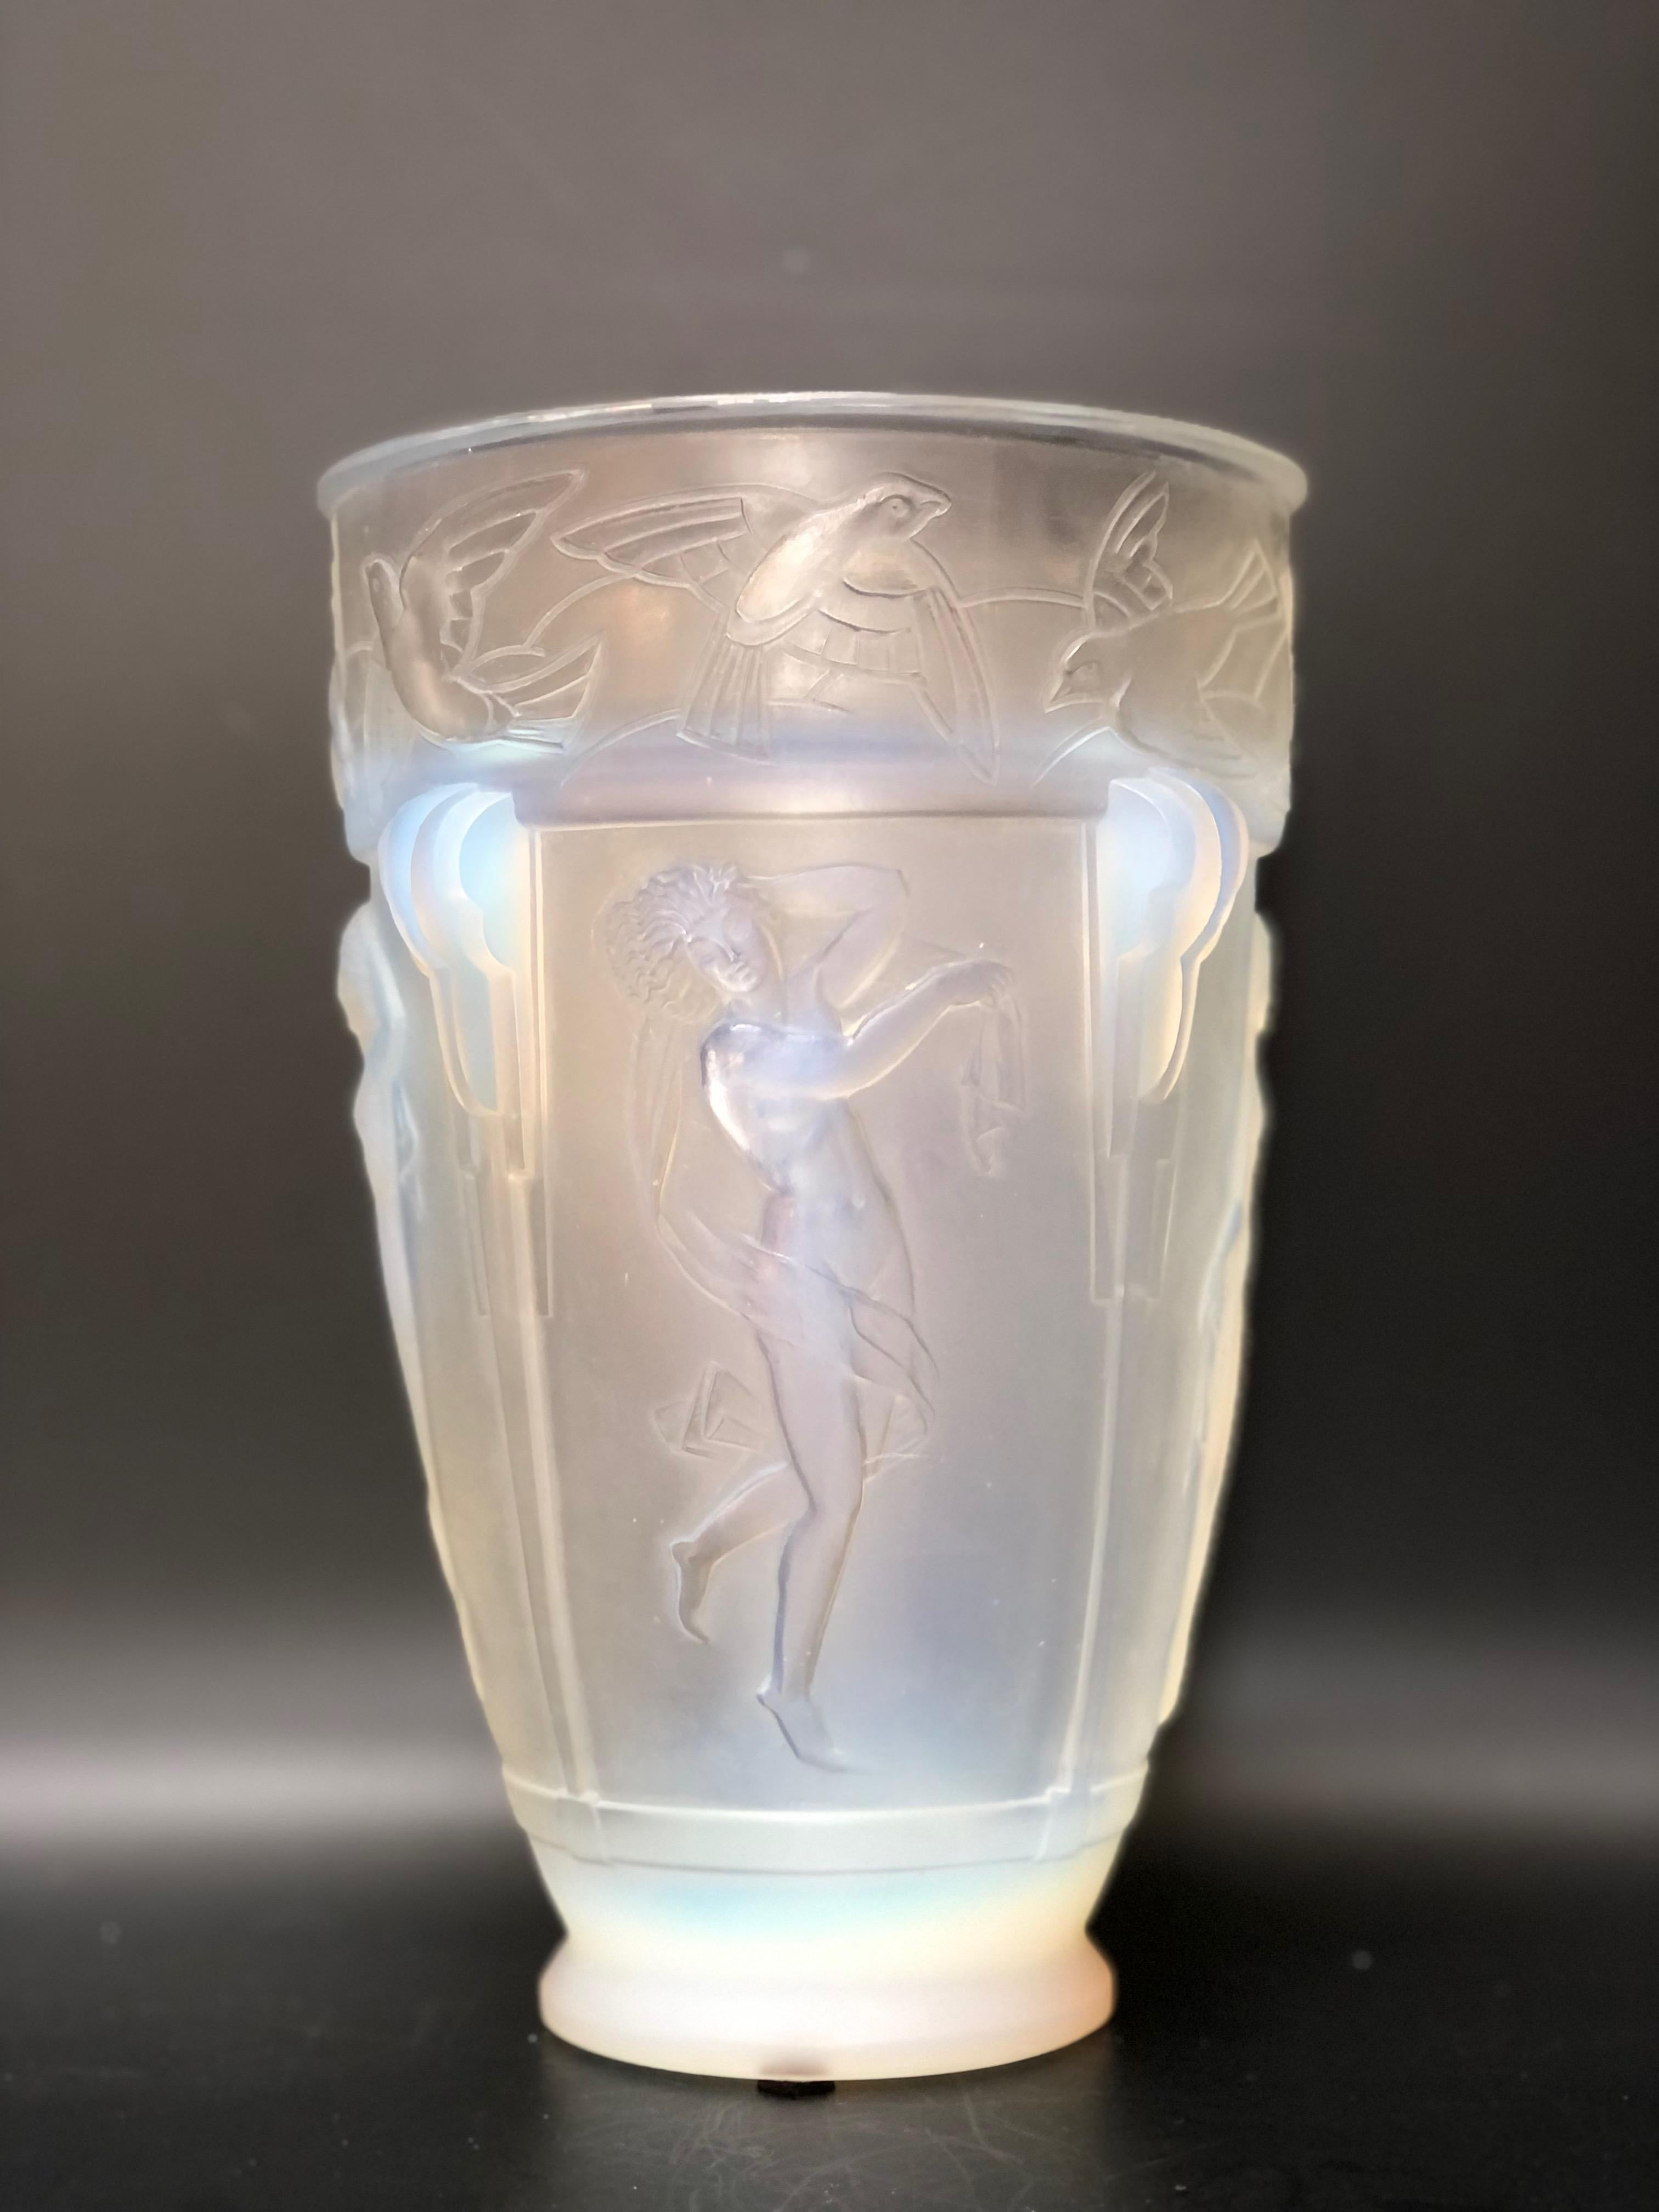 Vase art déco Sabino circa 1930 en verre moulé opalescent. 
Décor de frise représentant une femme dansant et des oiseaux.
En parfait état.
Hauteur : 22,8 cm 
Diamètre : 15 cm

MARIUS-ERNEST SABINO, LE SCULPTEUR DEVENU MAÎTRE VERRIER DE L'ART